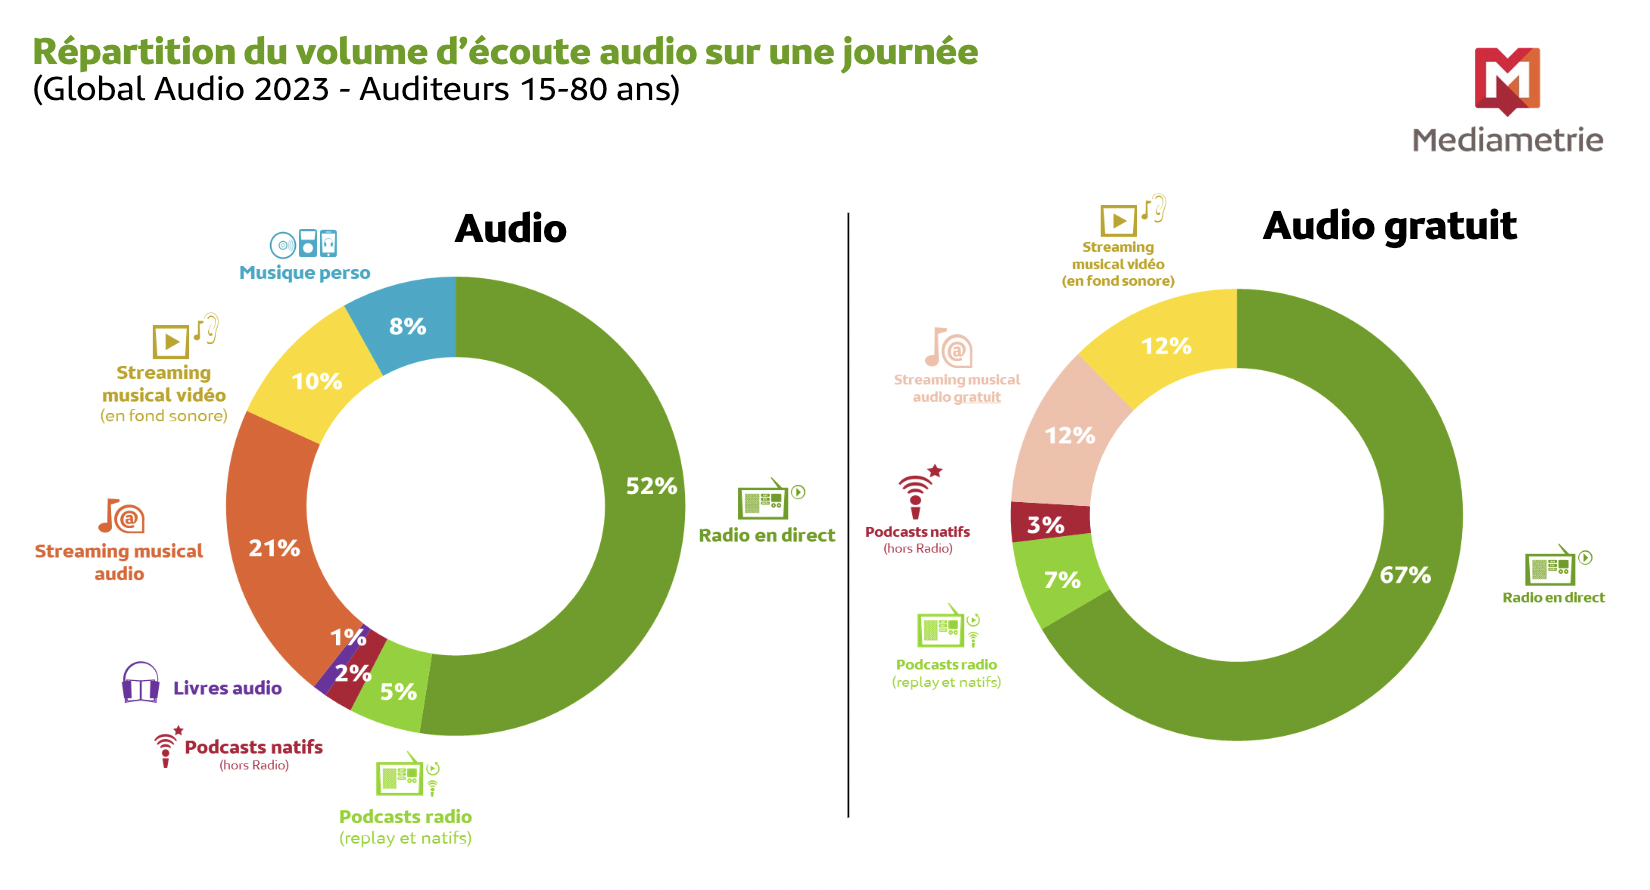 La musique représente plus des deux tiers des contenus audio écoutés chaque jour (67%), et les contenus "parlés" un tiers.